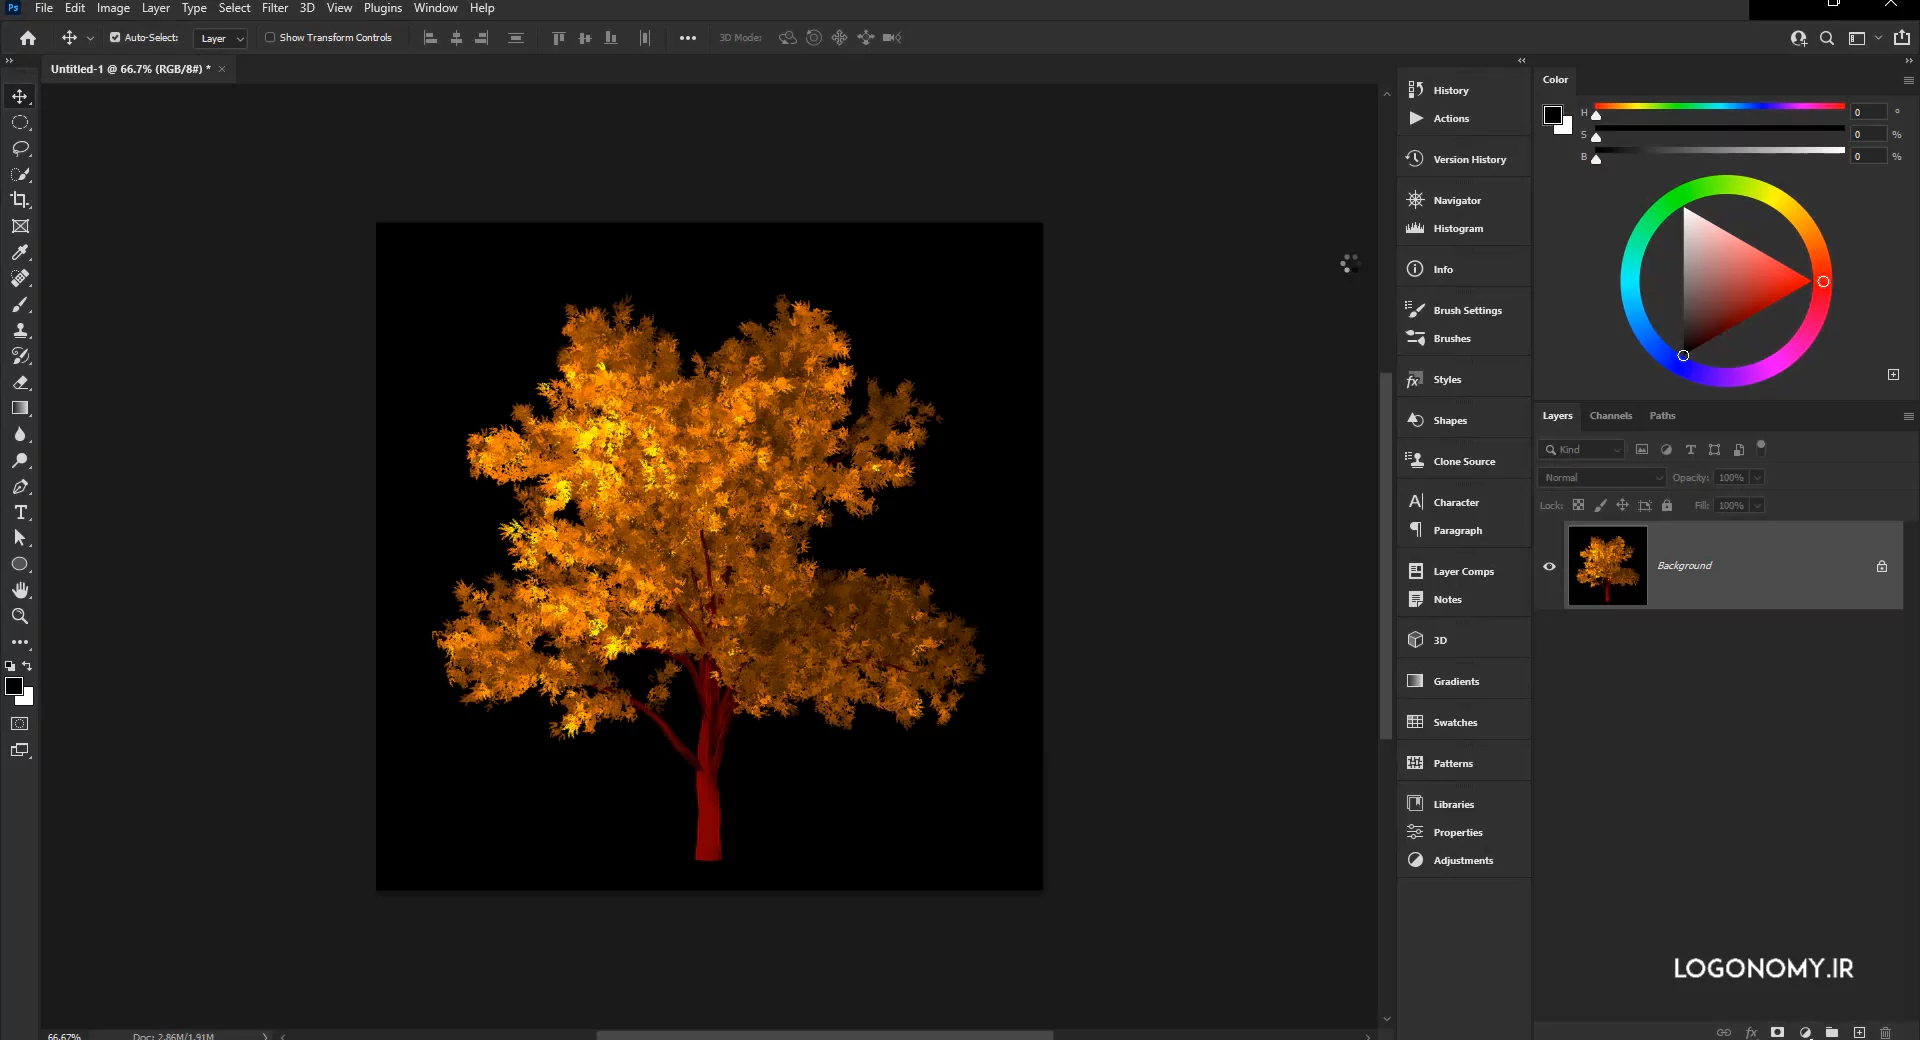 معرفی فیلترهای Flame ،Picture Frame و Tree از مجموعه فیلترهای Render در برنامه فتوشاپ